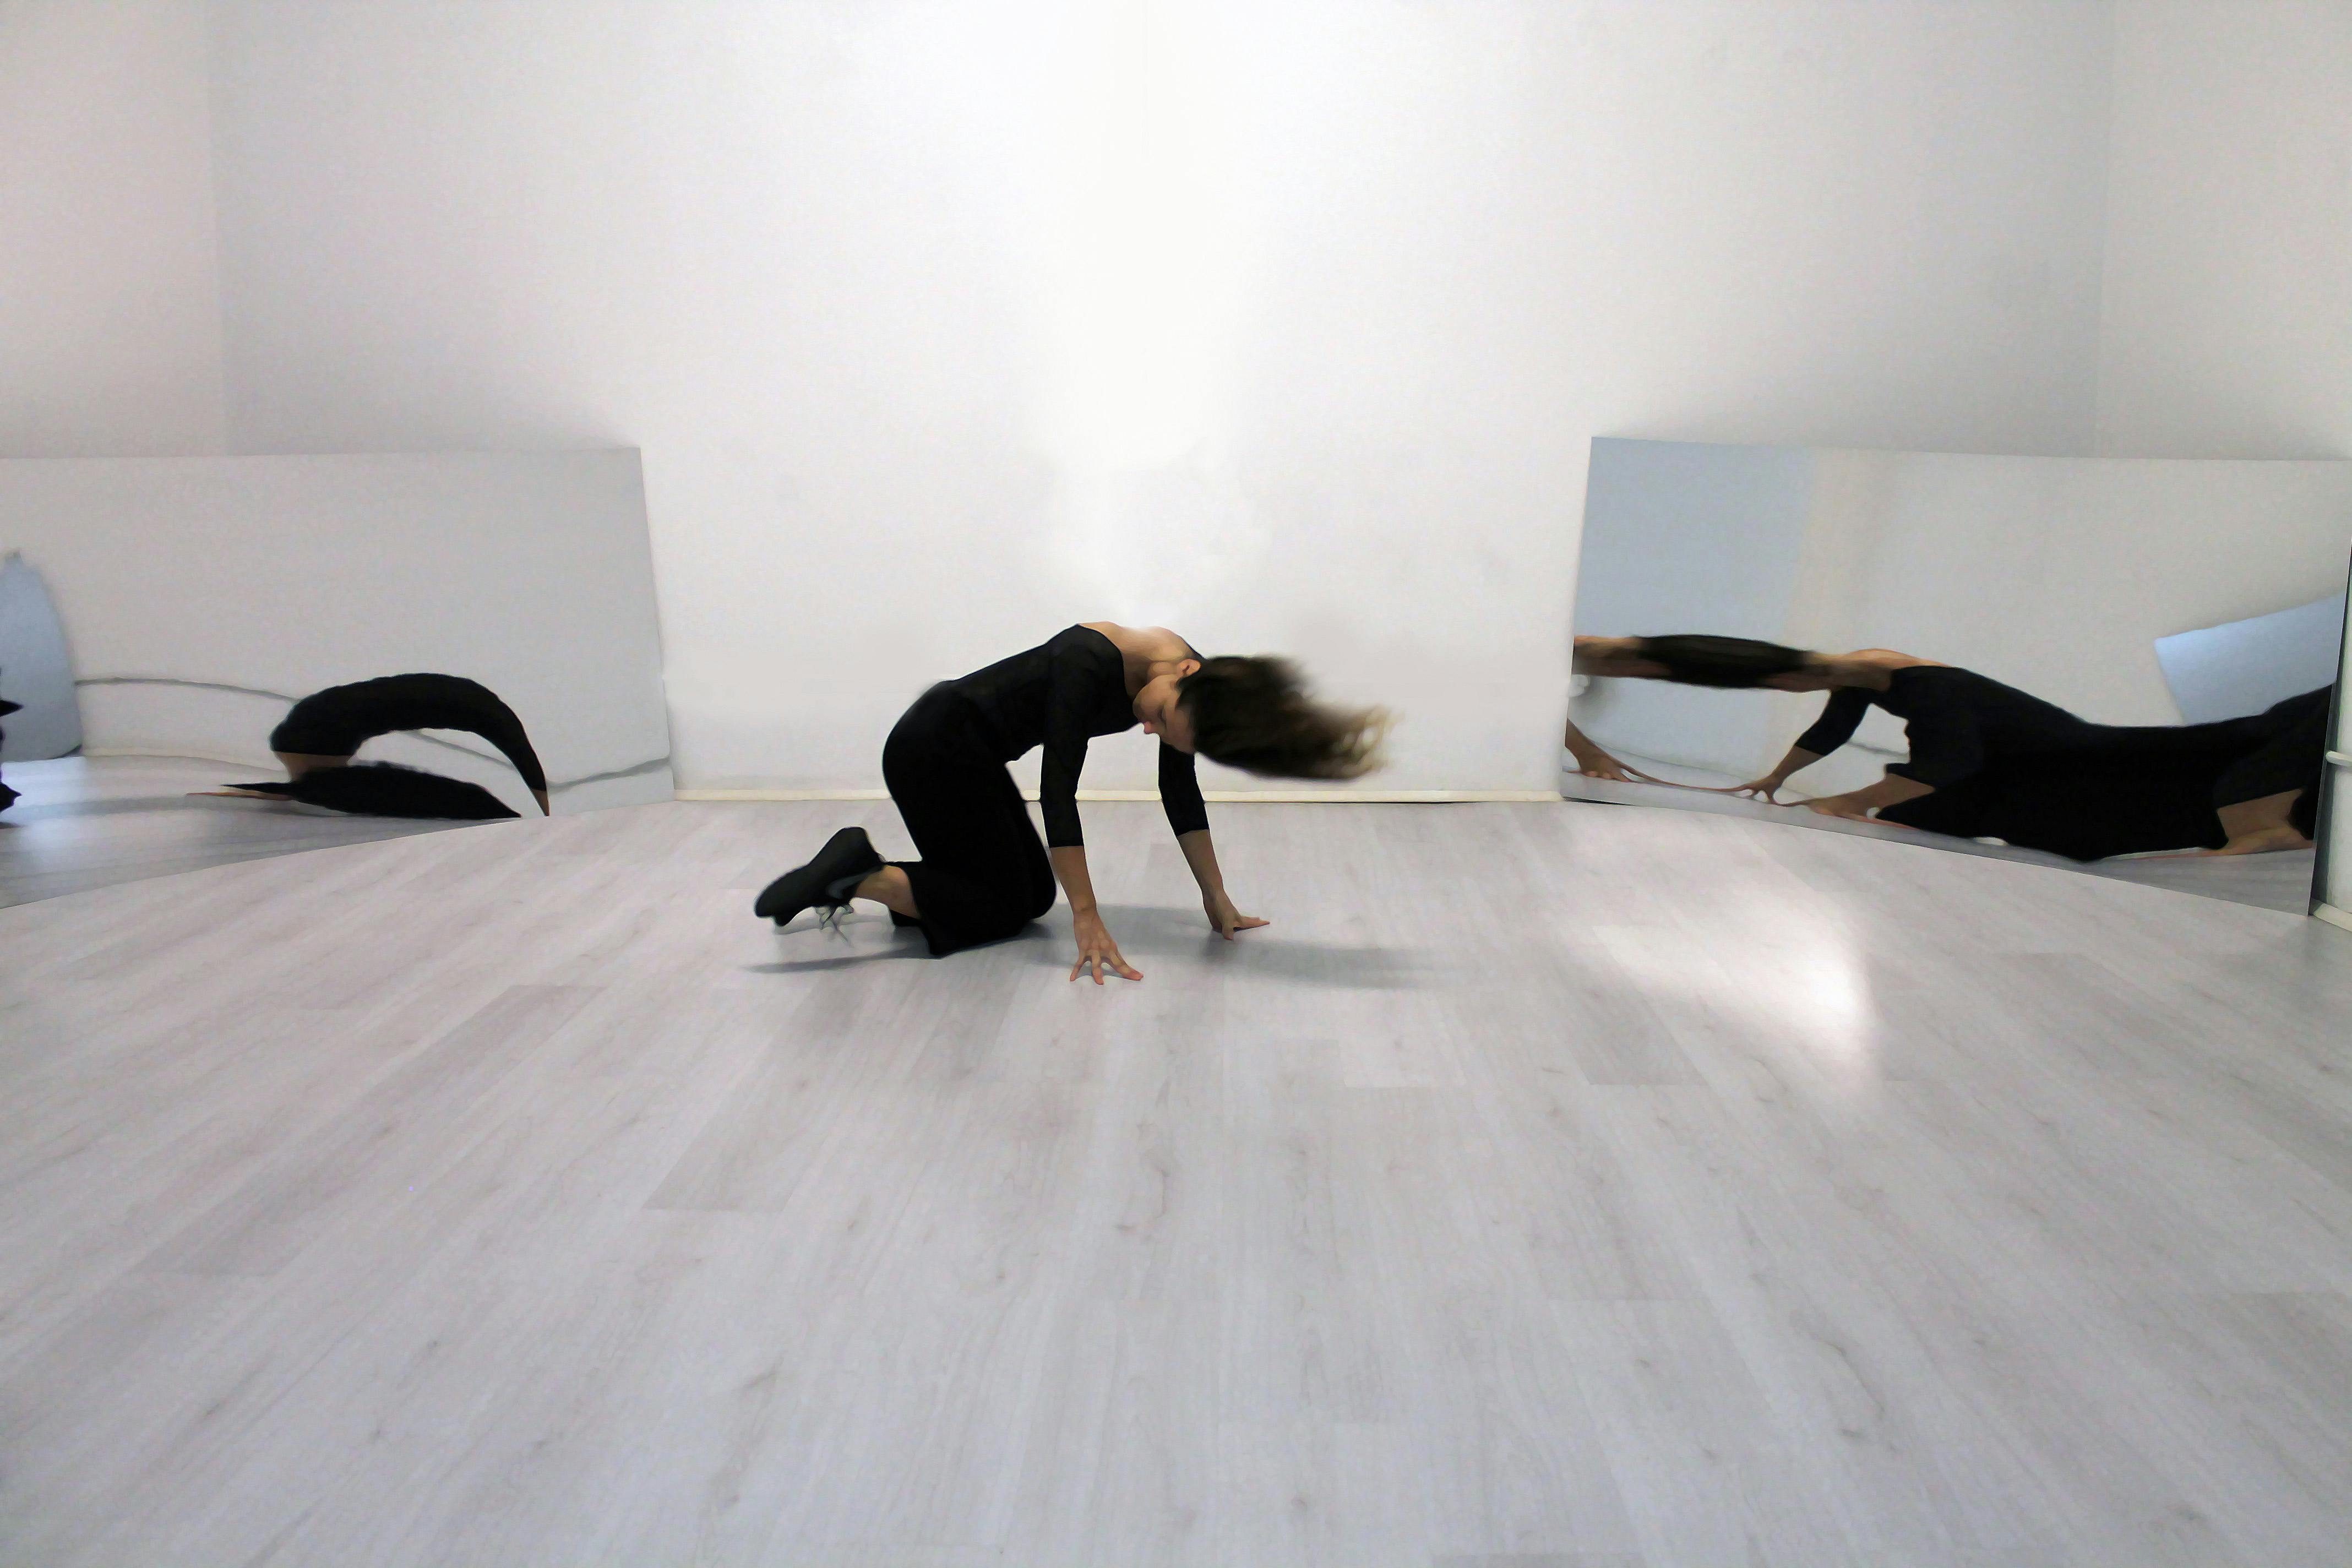 Una danzatrice inginocchiata sembra muovere la testa, due specchi ai suoi lati riflettono l'immagine